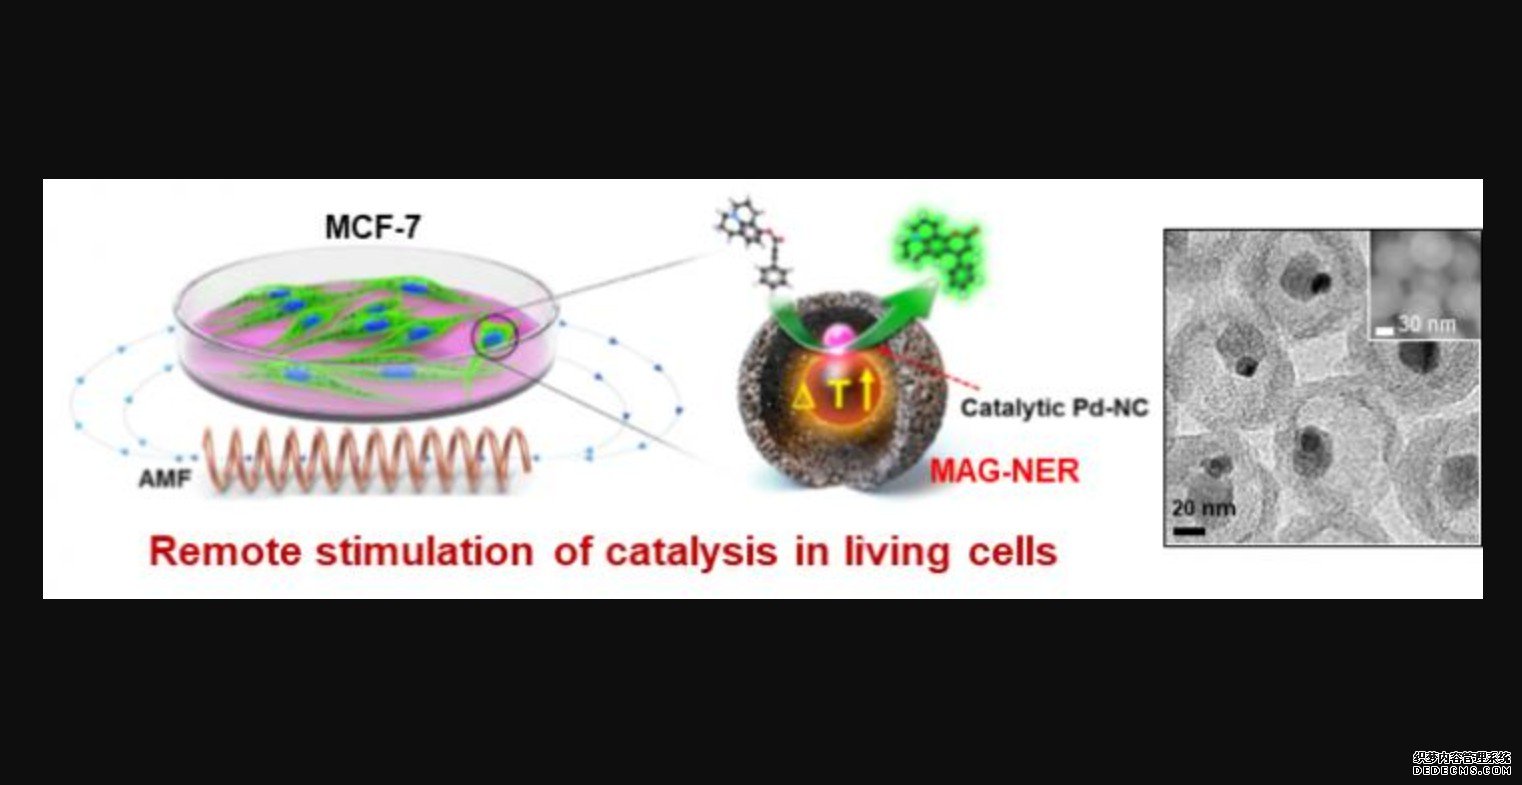 远程控制活细胞内杏耀化学反应的纳米催化剂